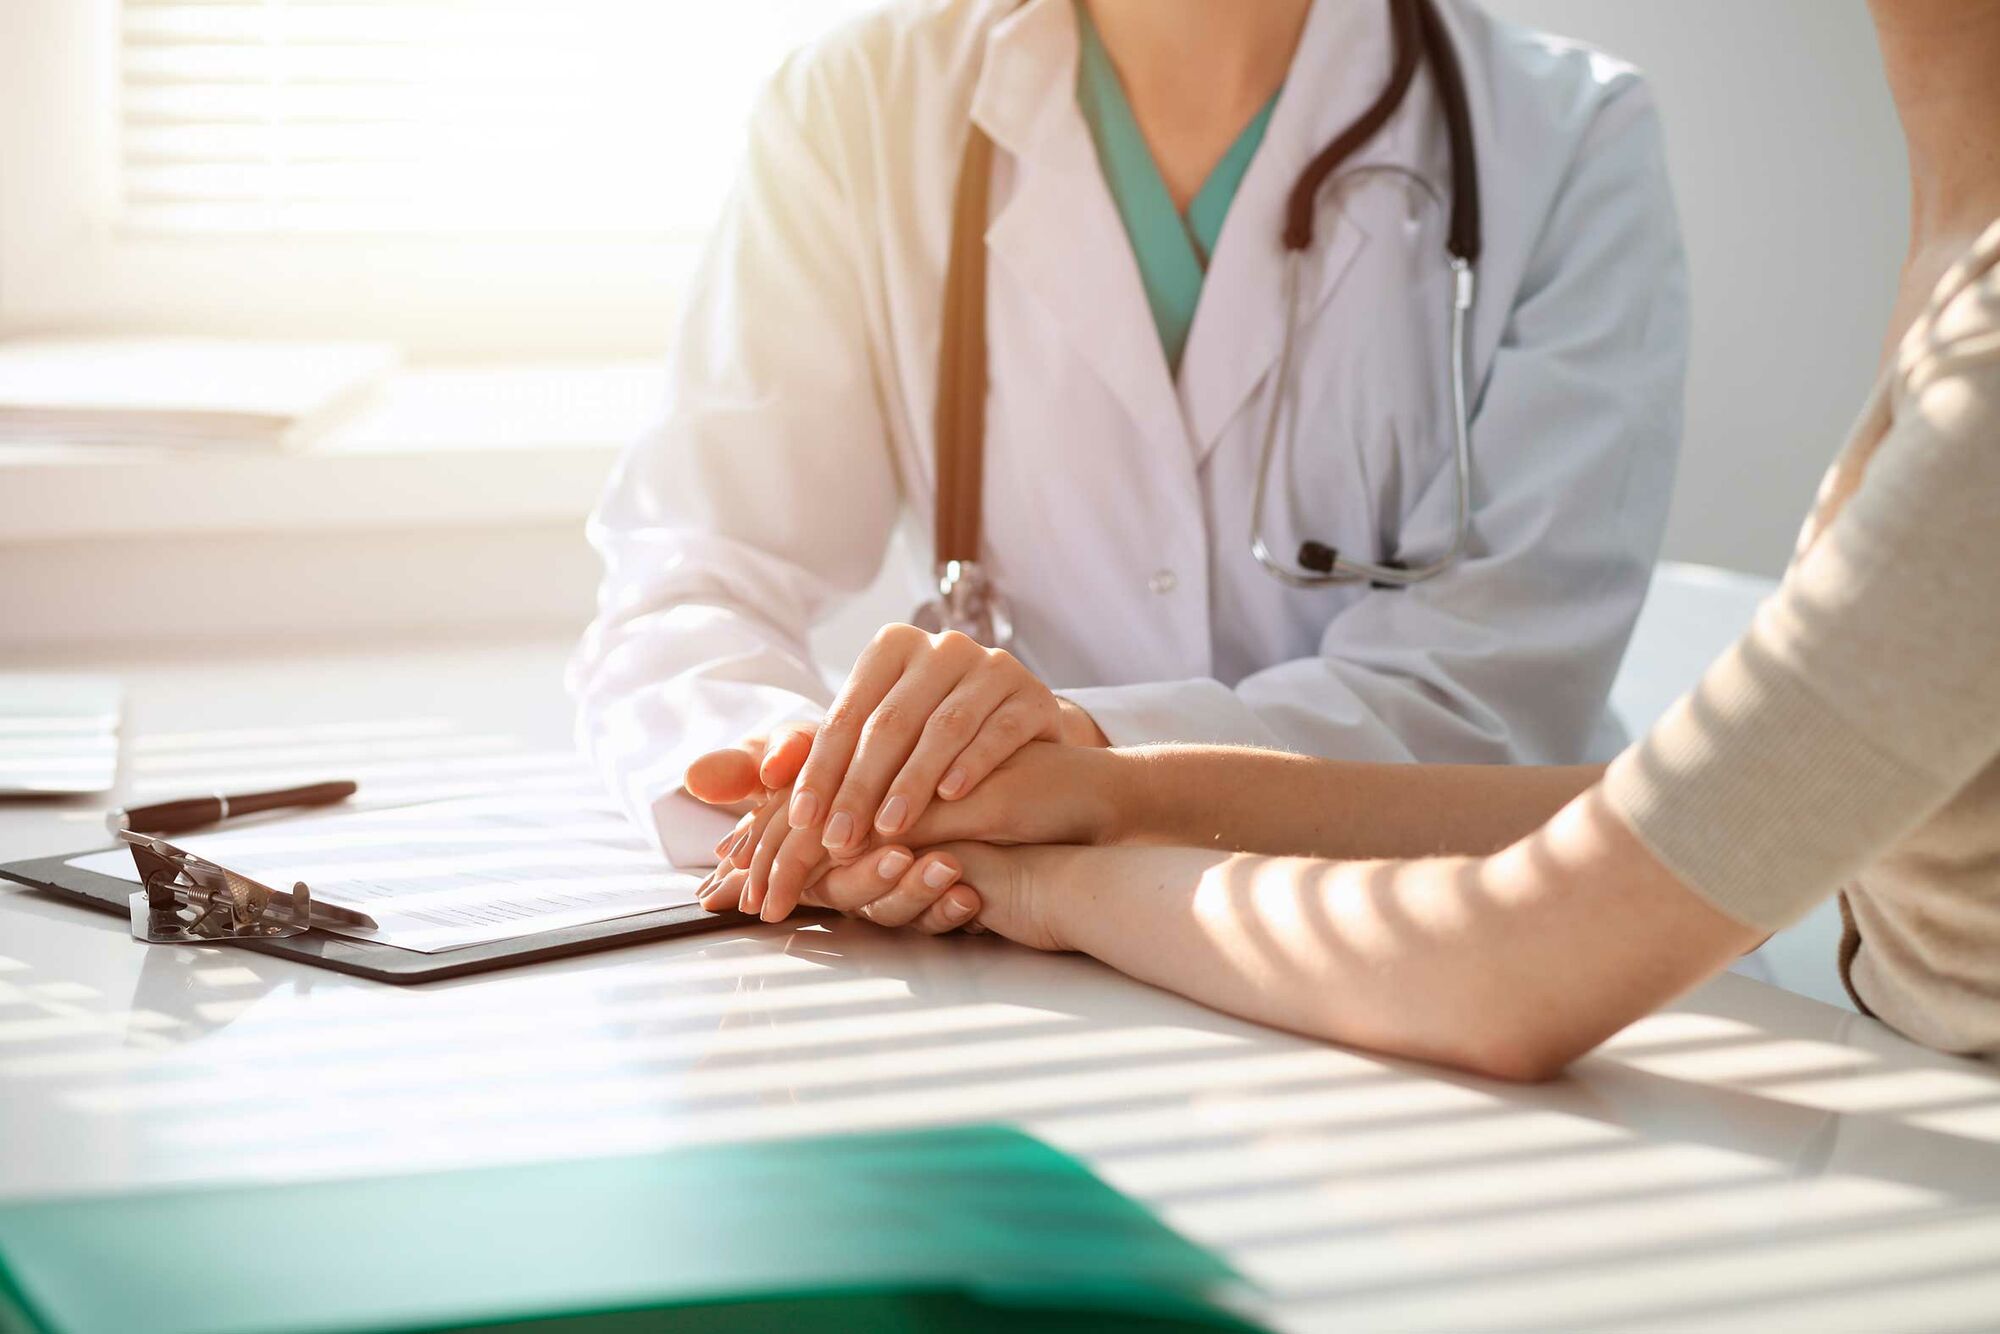 Das Bild zeigt eine Medizinerin in weißem Kittel mit Stethoskop um den Hals, die mit einer Patientin an einem Tisch sitzt und deren Hände umfasst. Vor der Medizinerin liegt ein Klemmbrett auf dem Tisch.